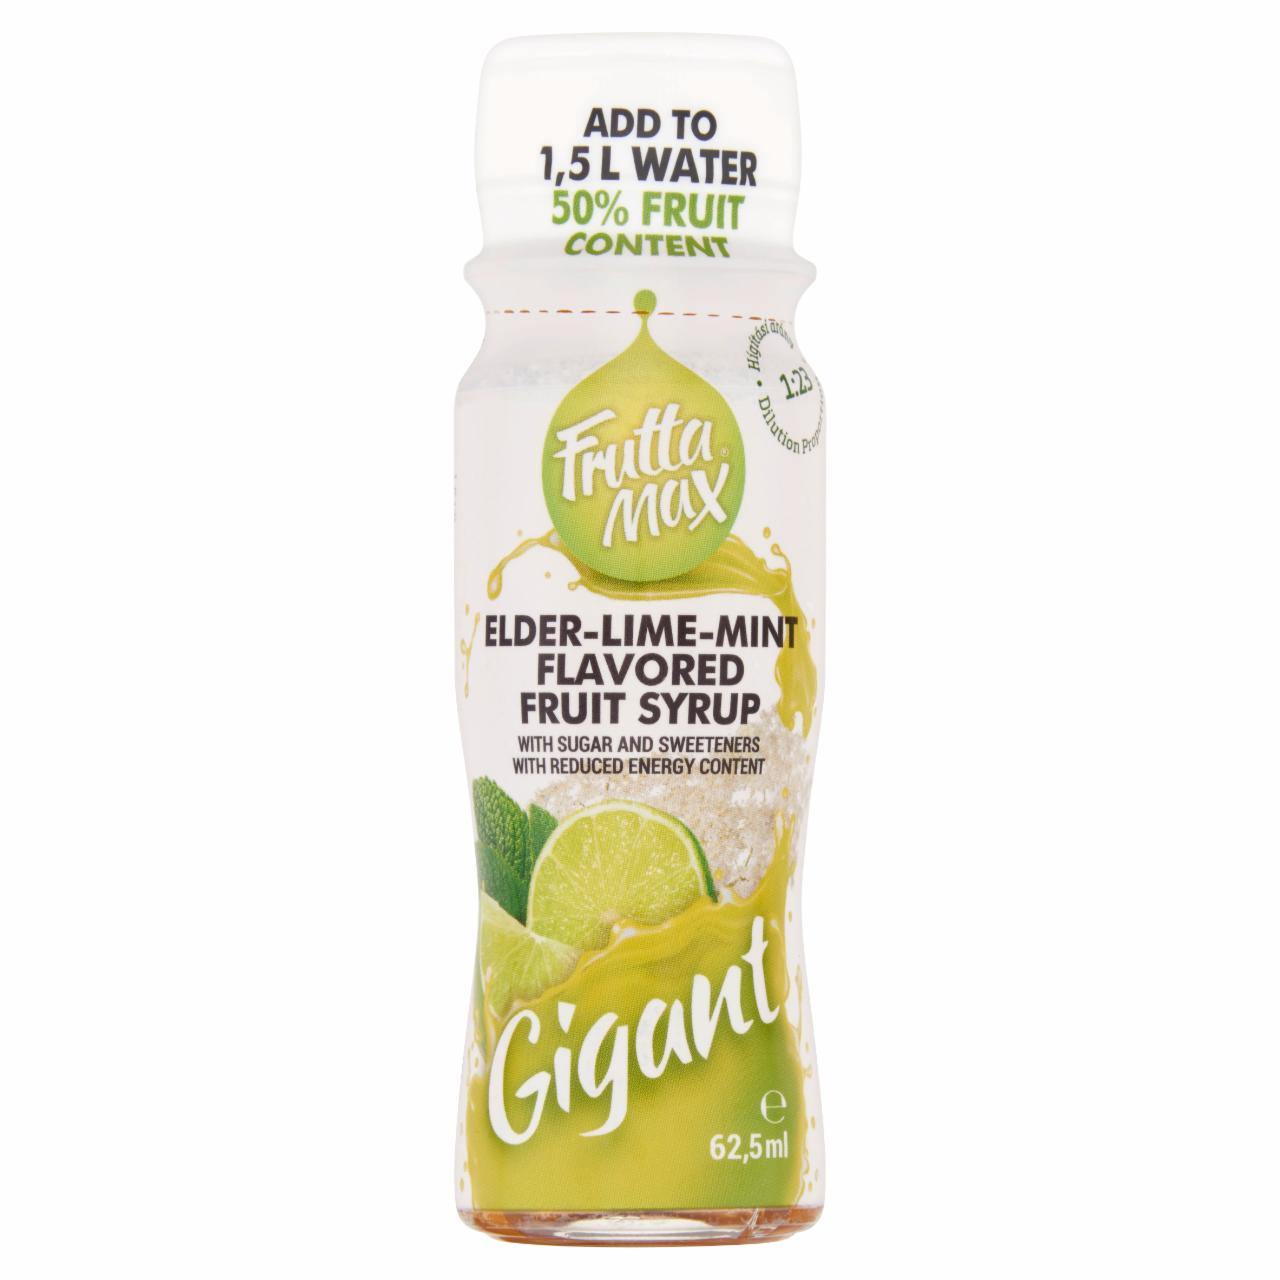 Képek - FruttaMax Gigant bodza-lime-menta ízű gyümölcsszörp csökkentett energiatartalommal 62,5 ml